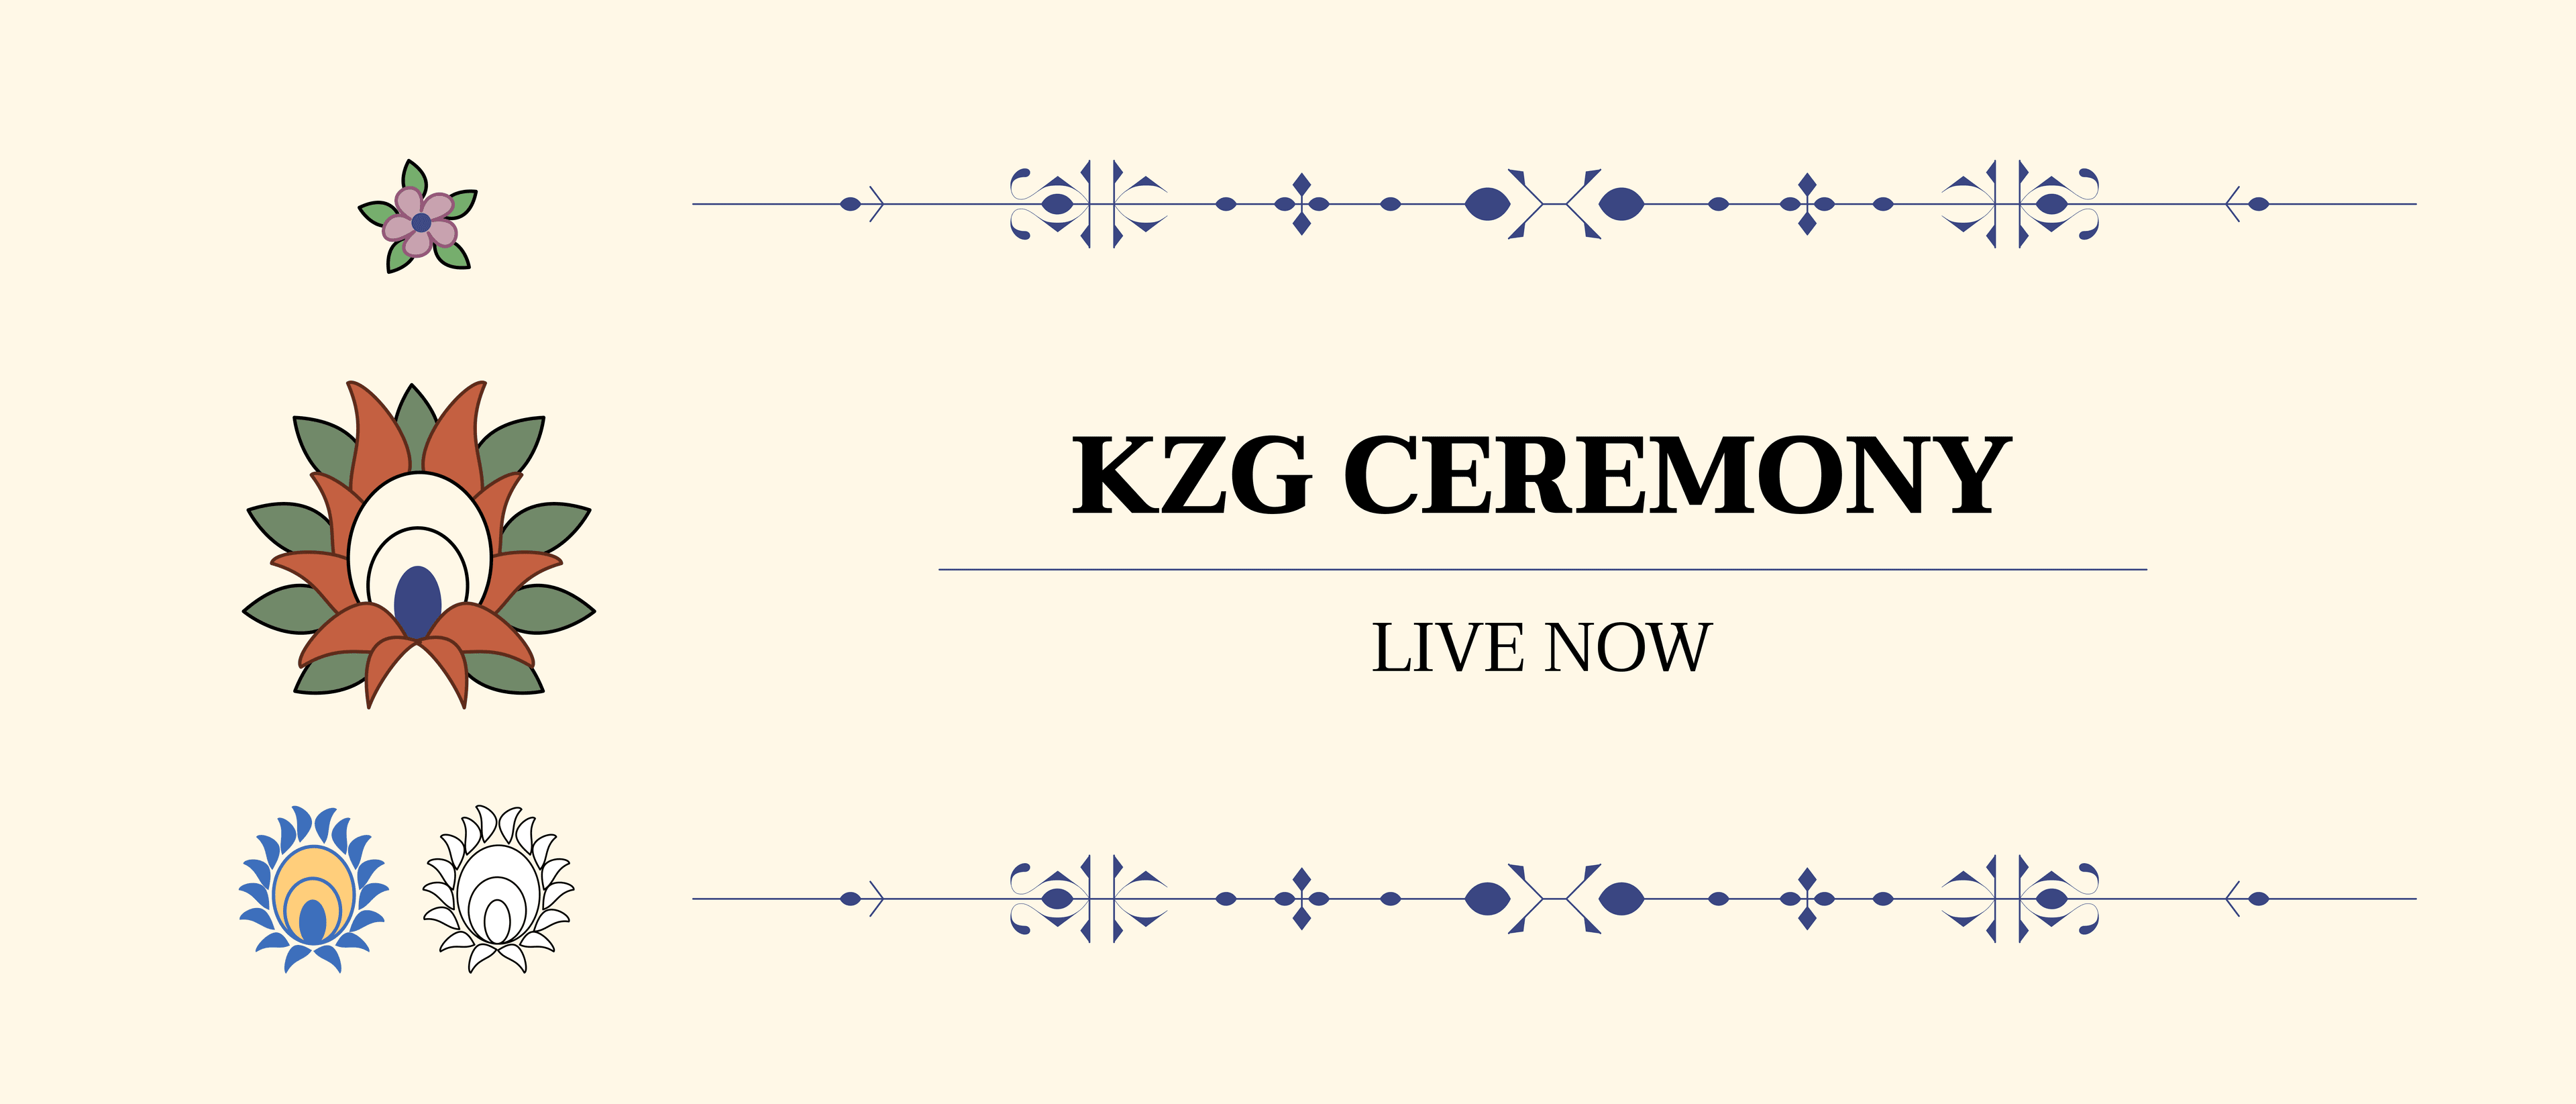 宣布启动 KZG 仪式